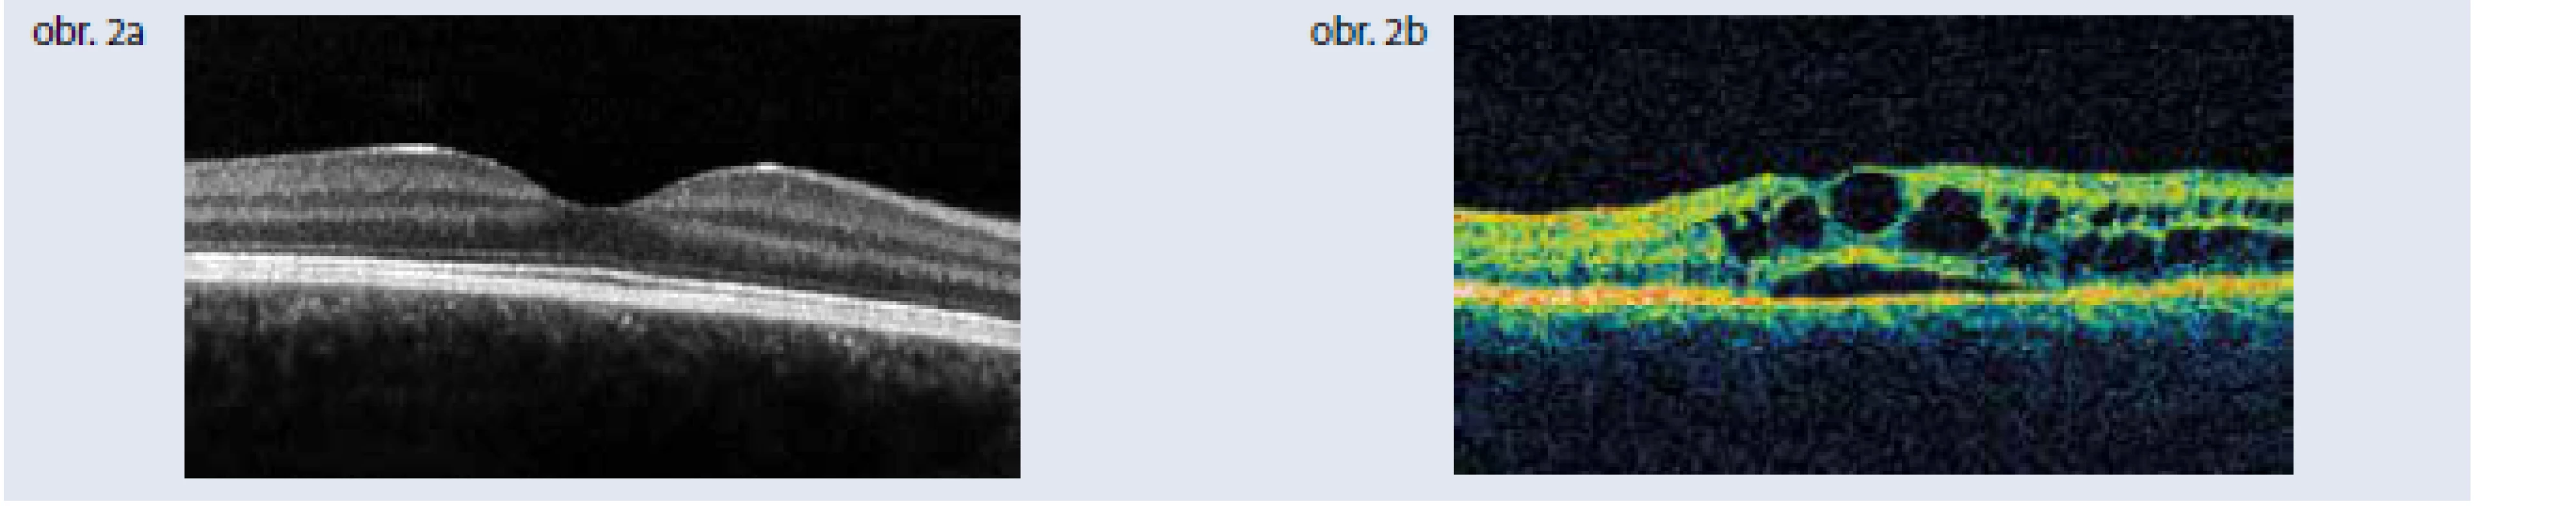 Optická koherentná tomografia. Obr. 2a | Optická koherentná tomografia normálnej makuly
Obr. 2b | Optická koherentná tomografia diabetického cystoidného edému makuly. Archív autorky